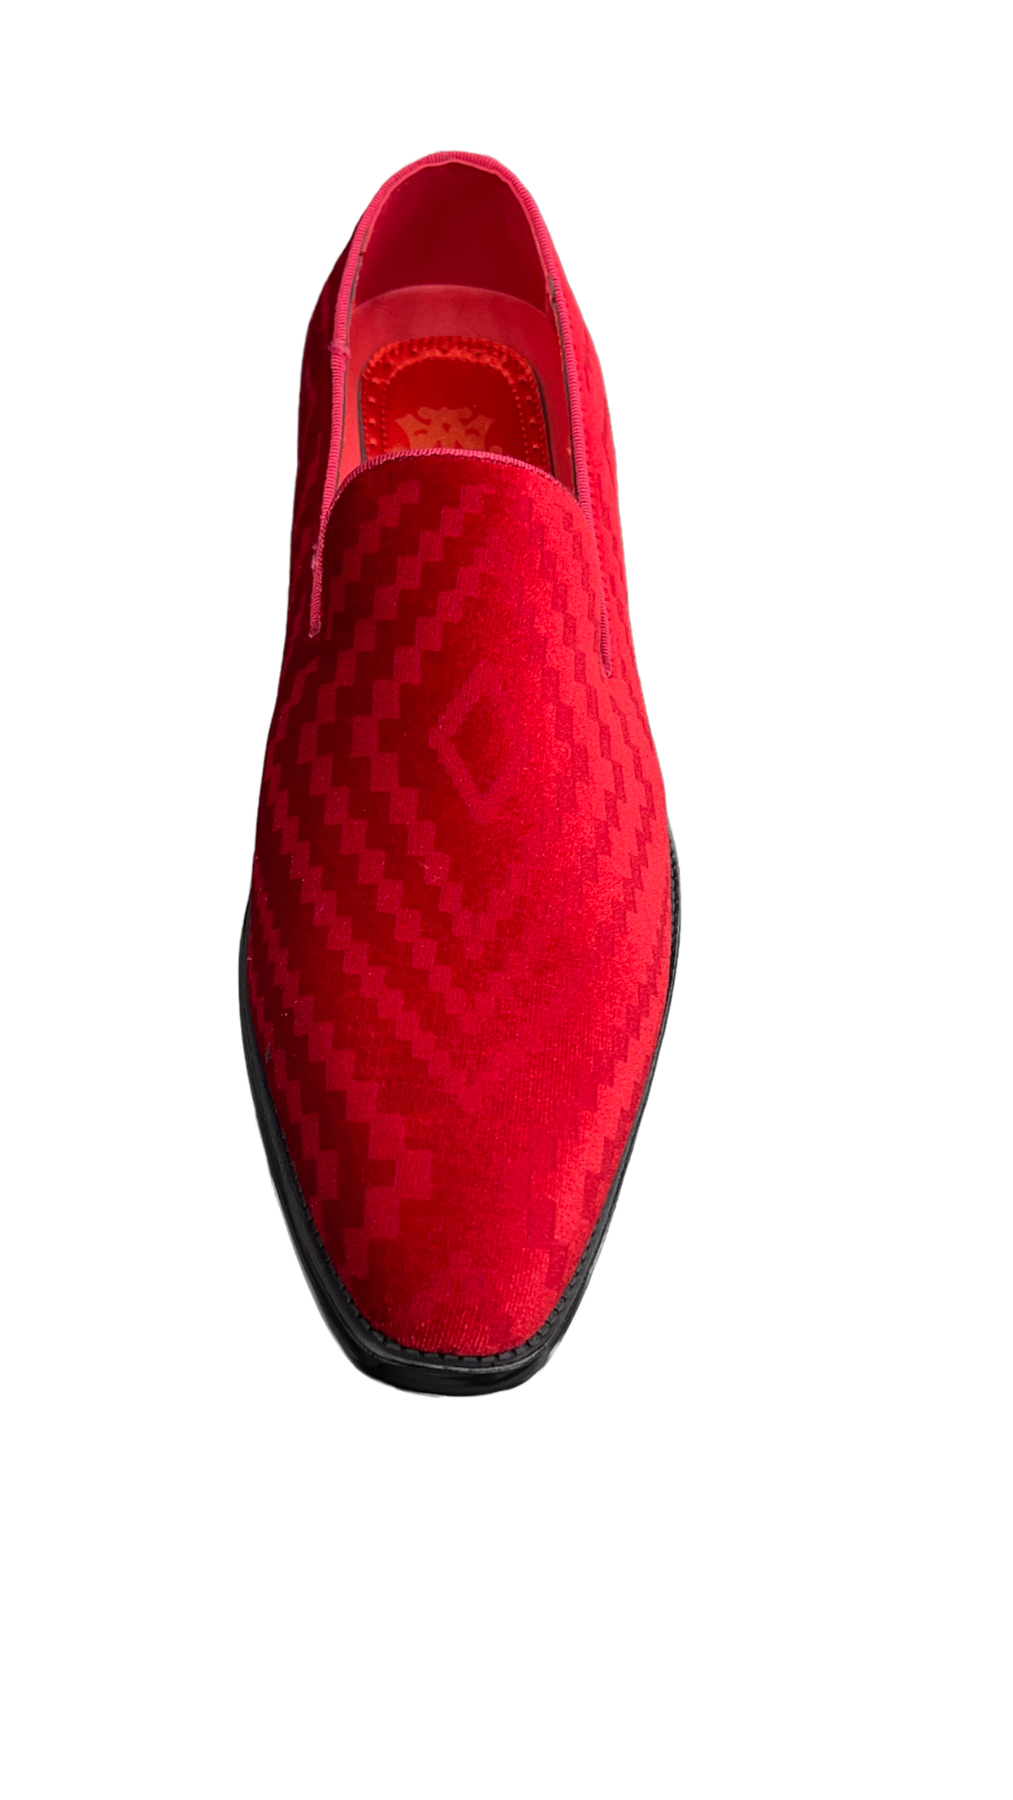 Men's red slip on shoes luxury velvet loafer fashion design – Design ...